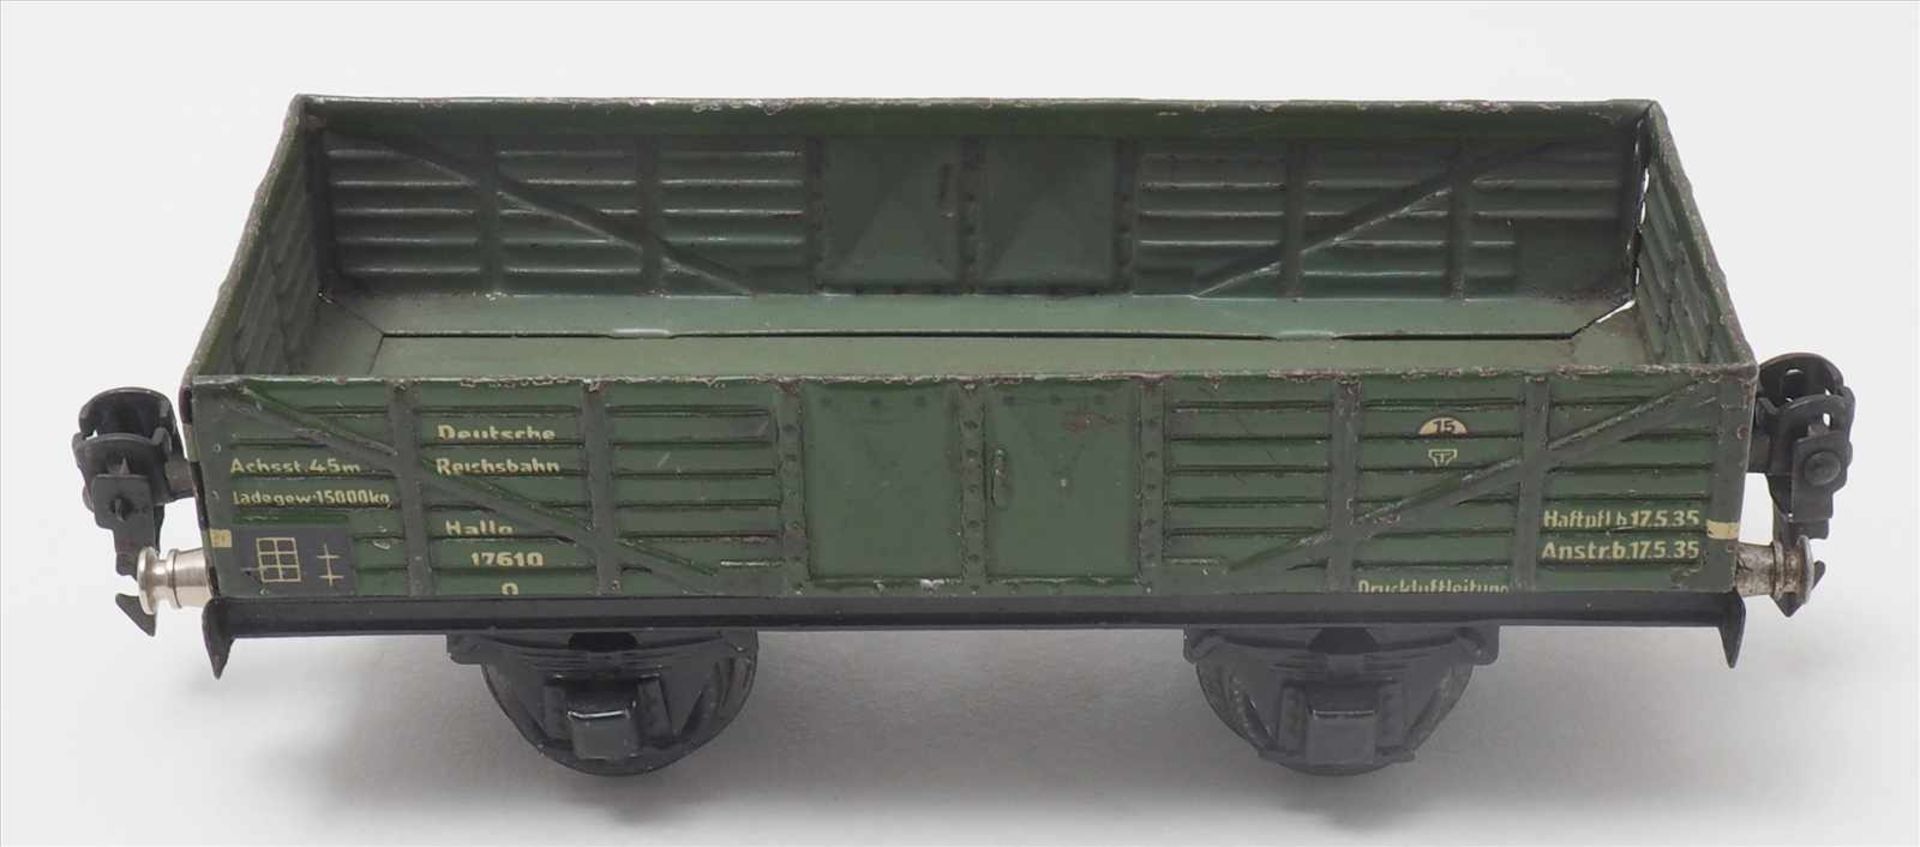 Zwei GüterwagenMärklin Spur 0. 1930-er Jahre. Niederbordwagen in grün. Guter, altersbedingter - Bild 2 aus 5